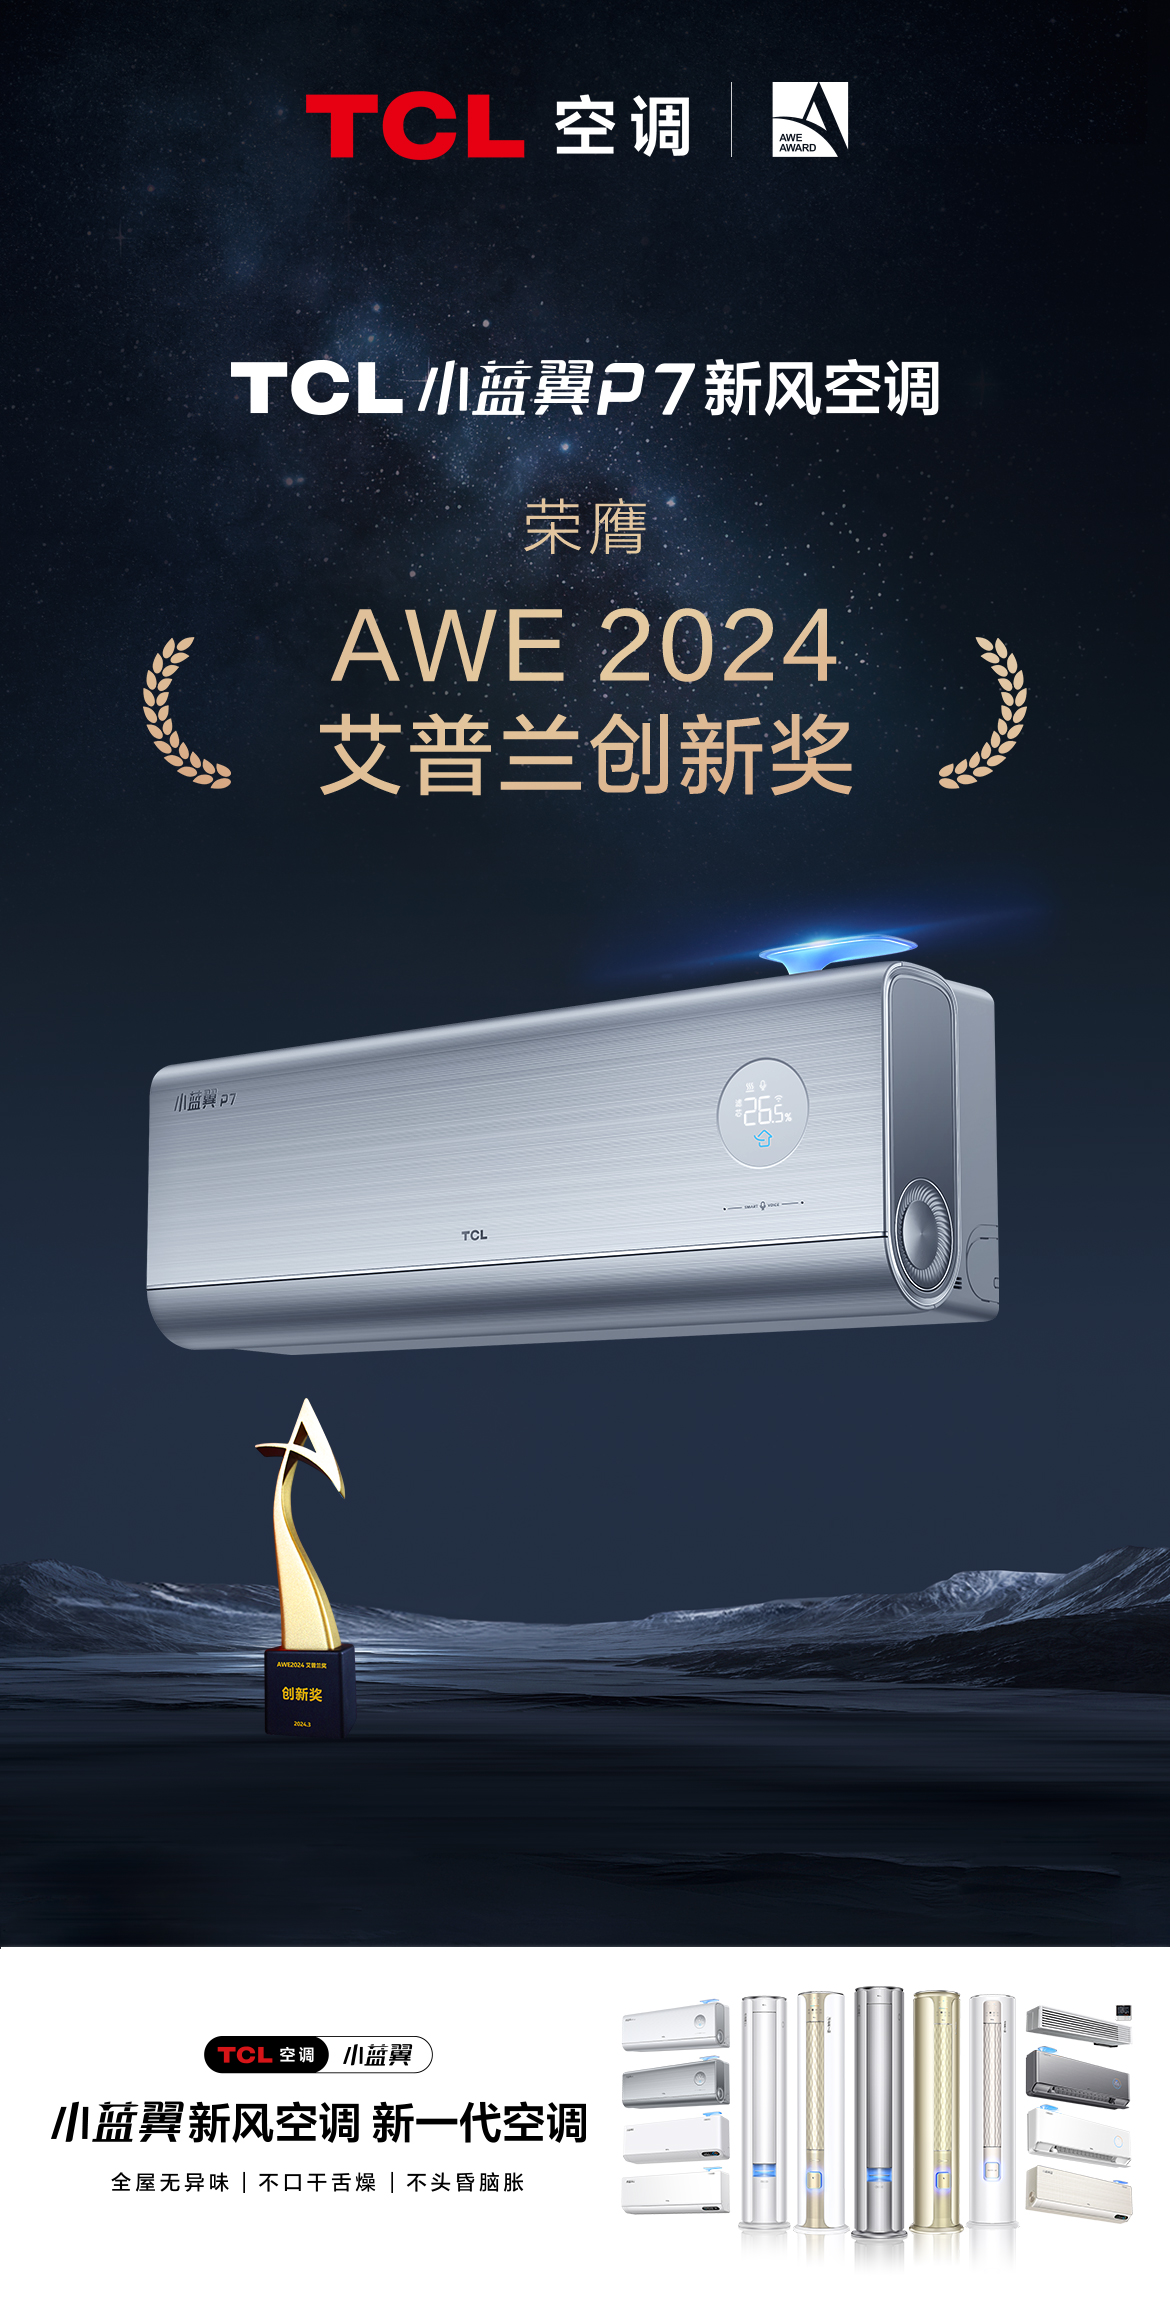 3月16日，有着“全球智慧生活奥斯卡”之称的AWE2024艾普兰奖在上海揭晓。凭借领先的新一代空调技术创新，TCL小蓝翼P7新风空调在经过严苛的专家评审后，斩获...